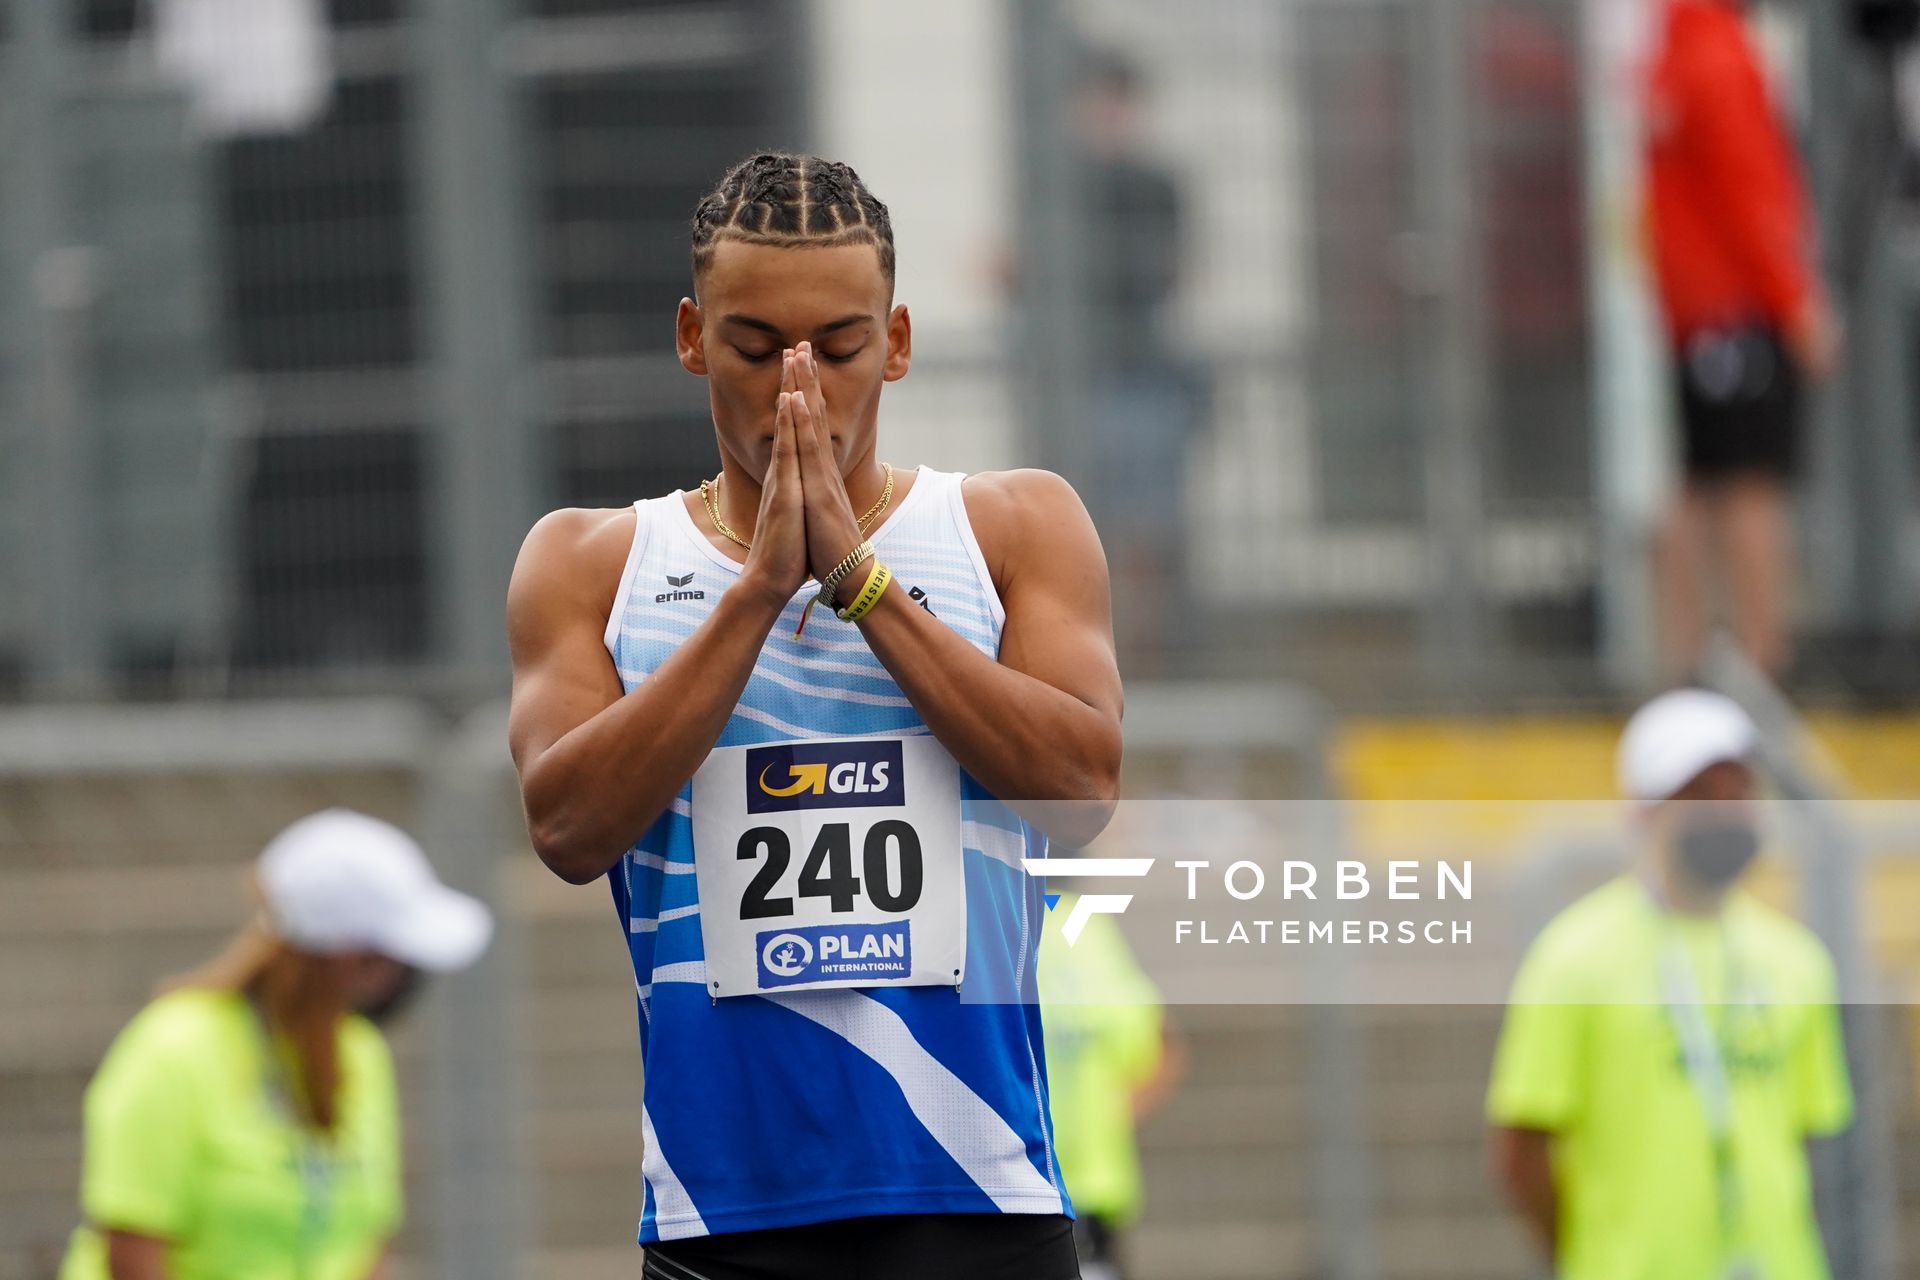 Jordan Gordon (OTB Osnabrueck) ueber 400m Huerden am 05.09.2020 waehrend den deutschen Leichtathletik-Jugendmeisterschaften im Frankenstadion in Heilbronn (Tag2)